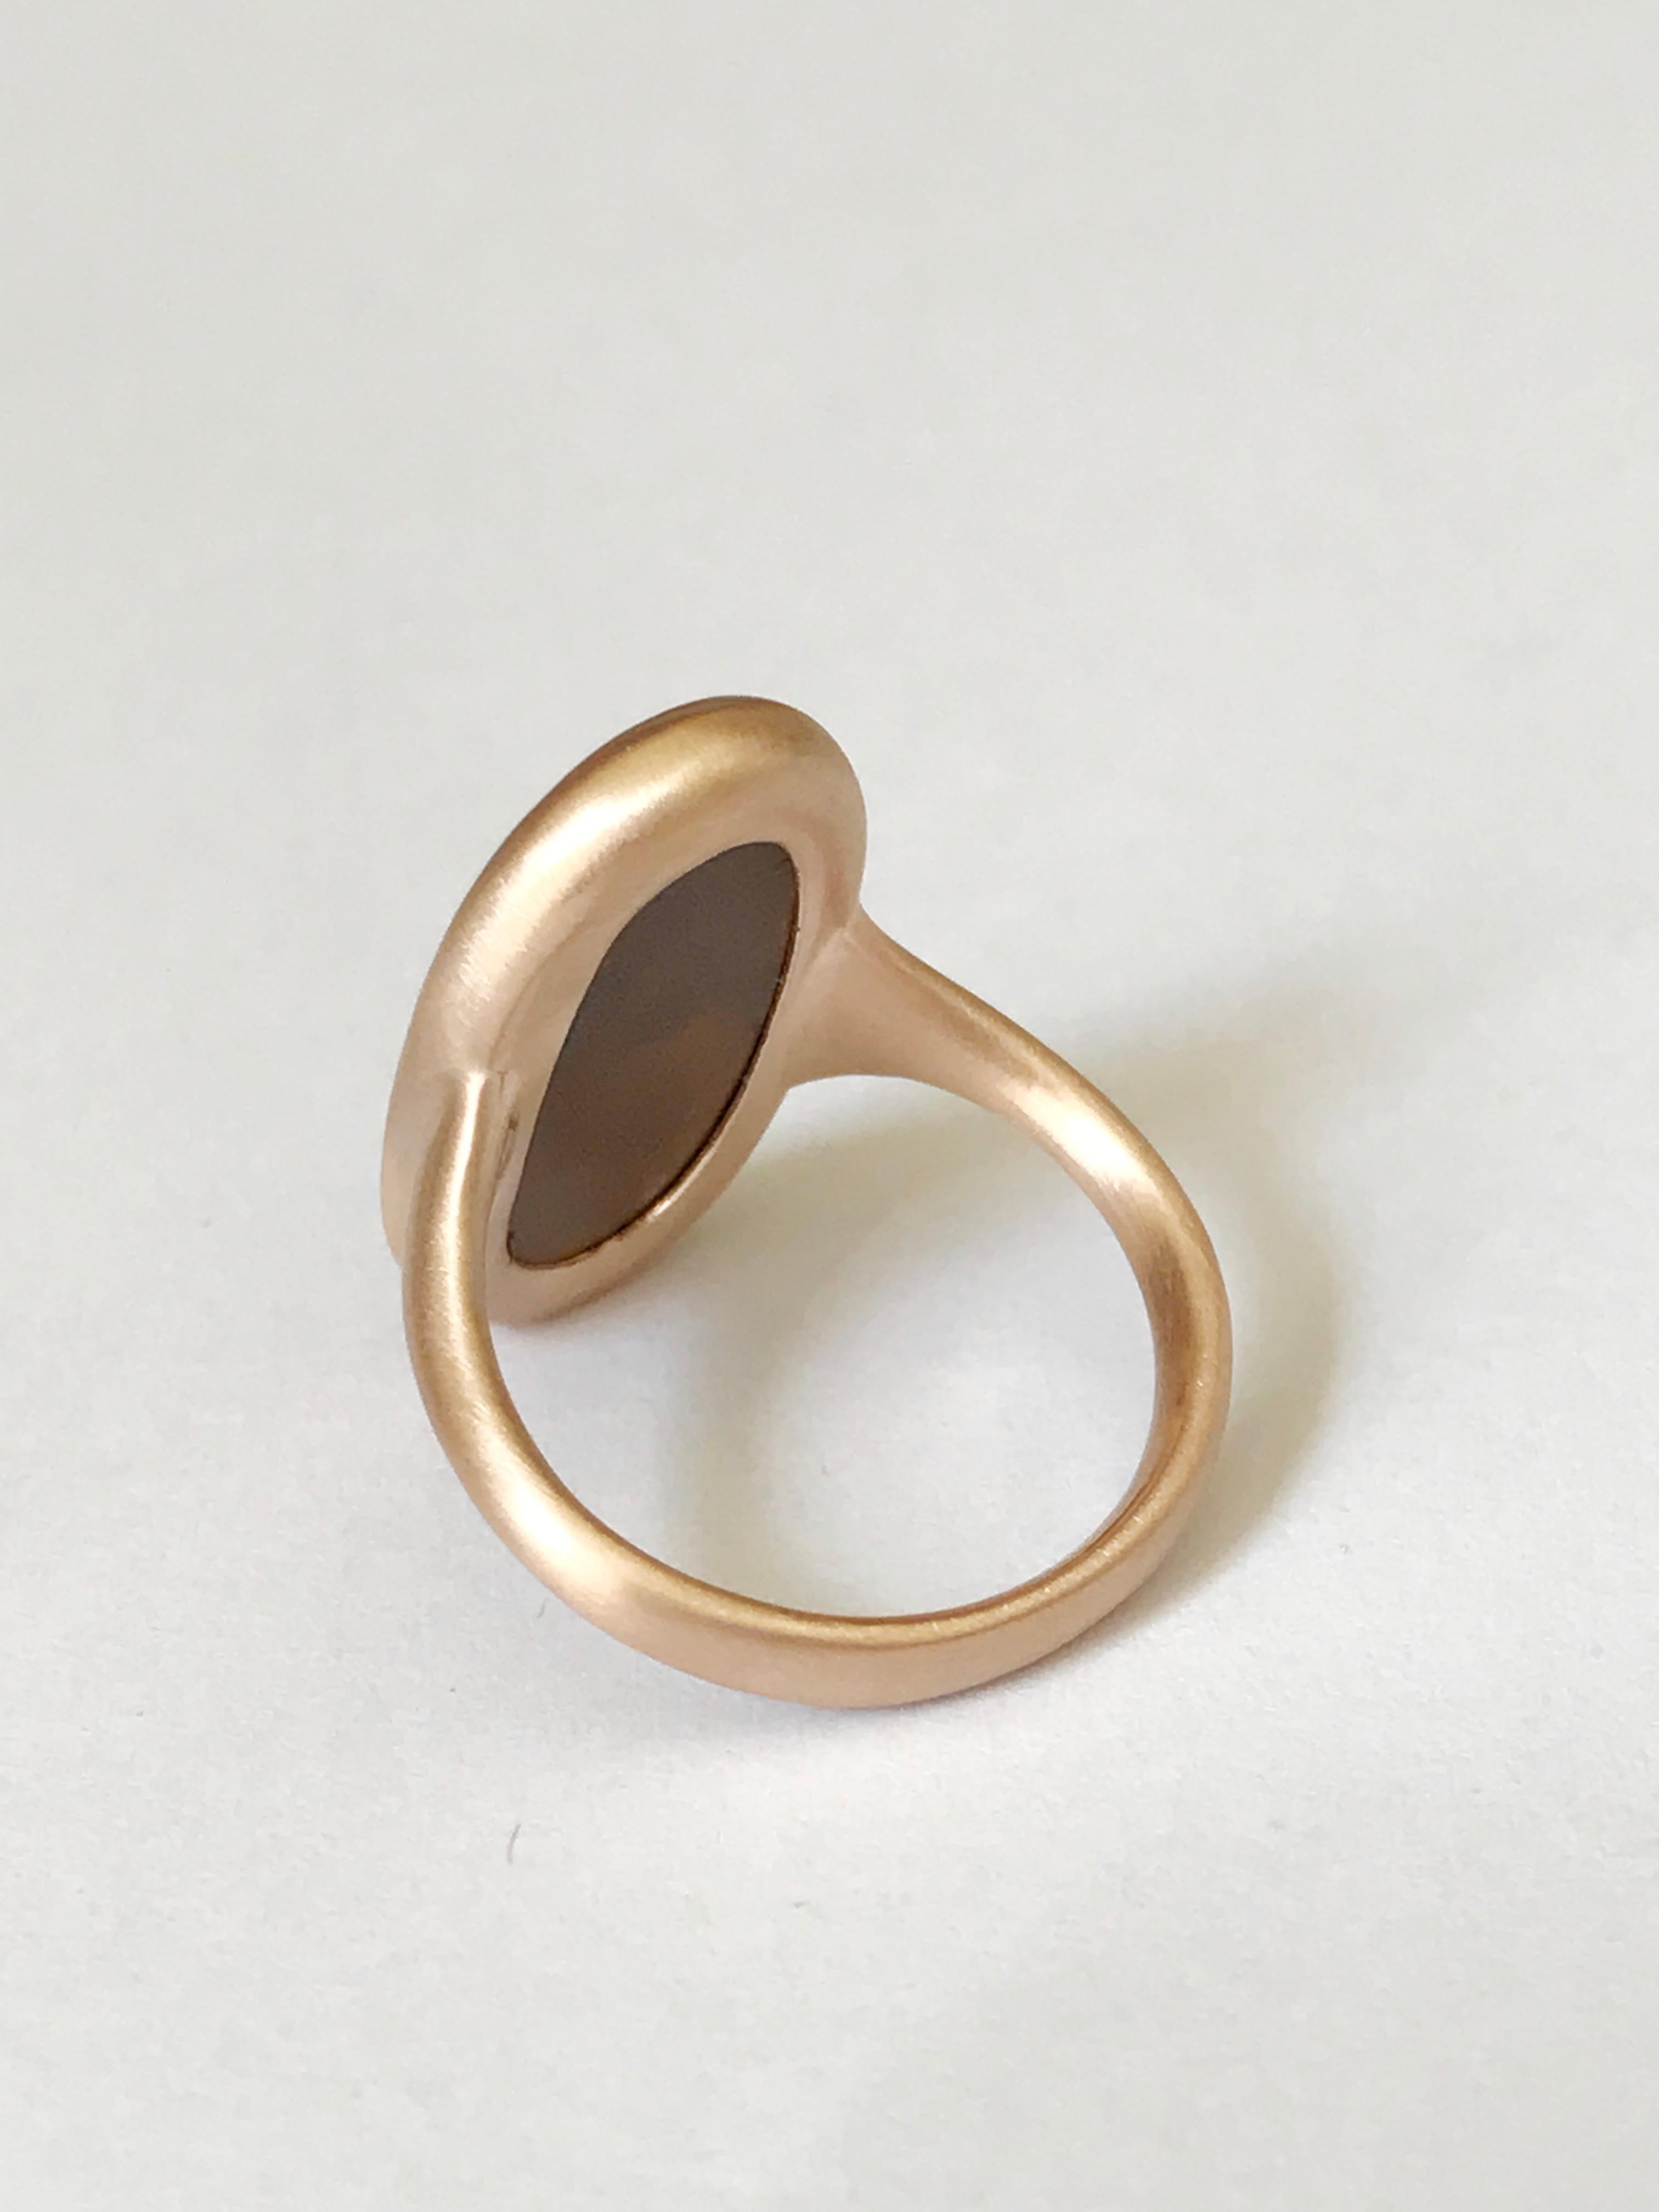 Dalben Boulder Opal Rose Gold Ring For Sale 3